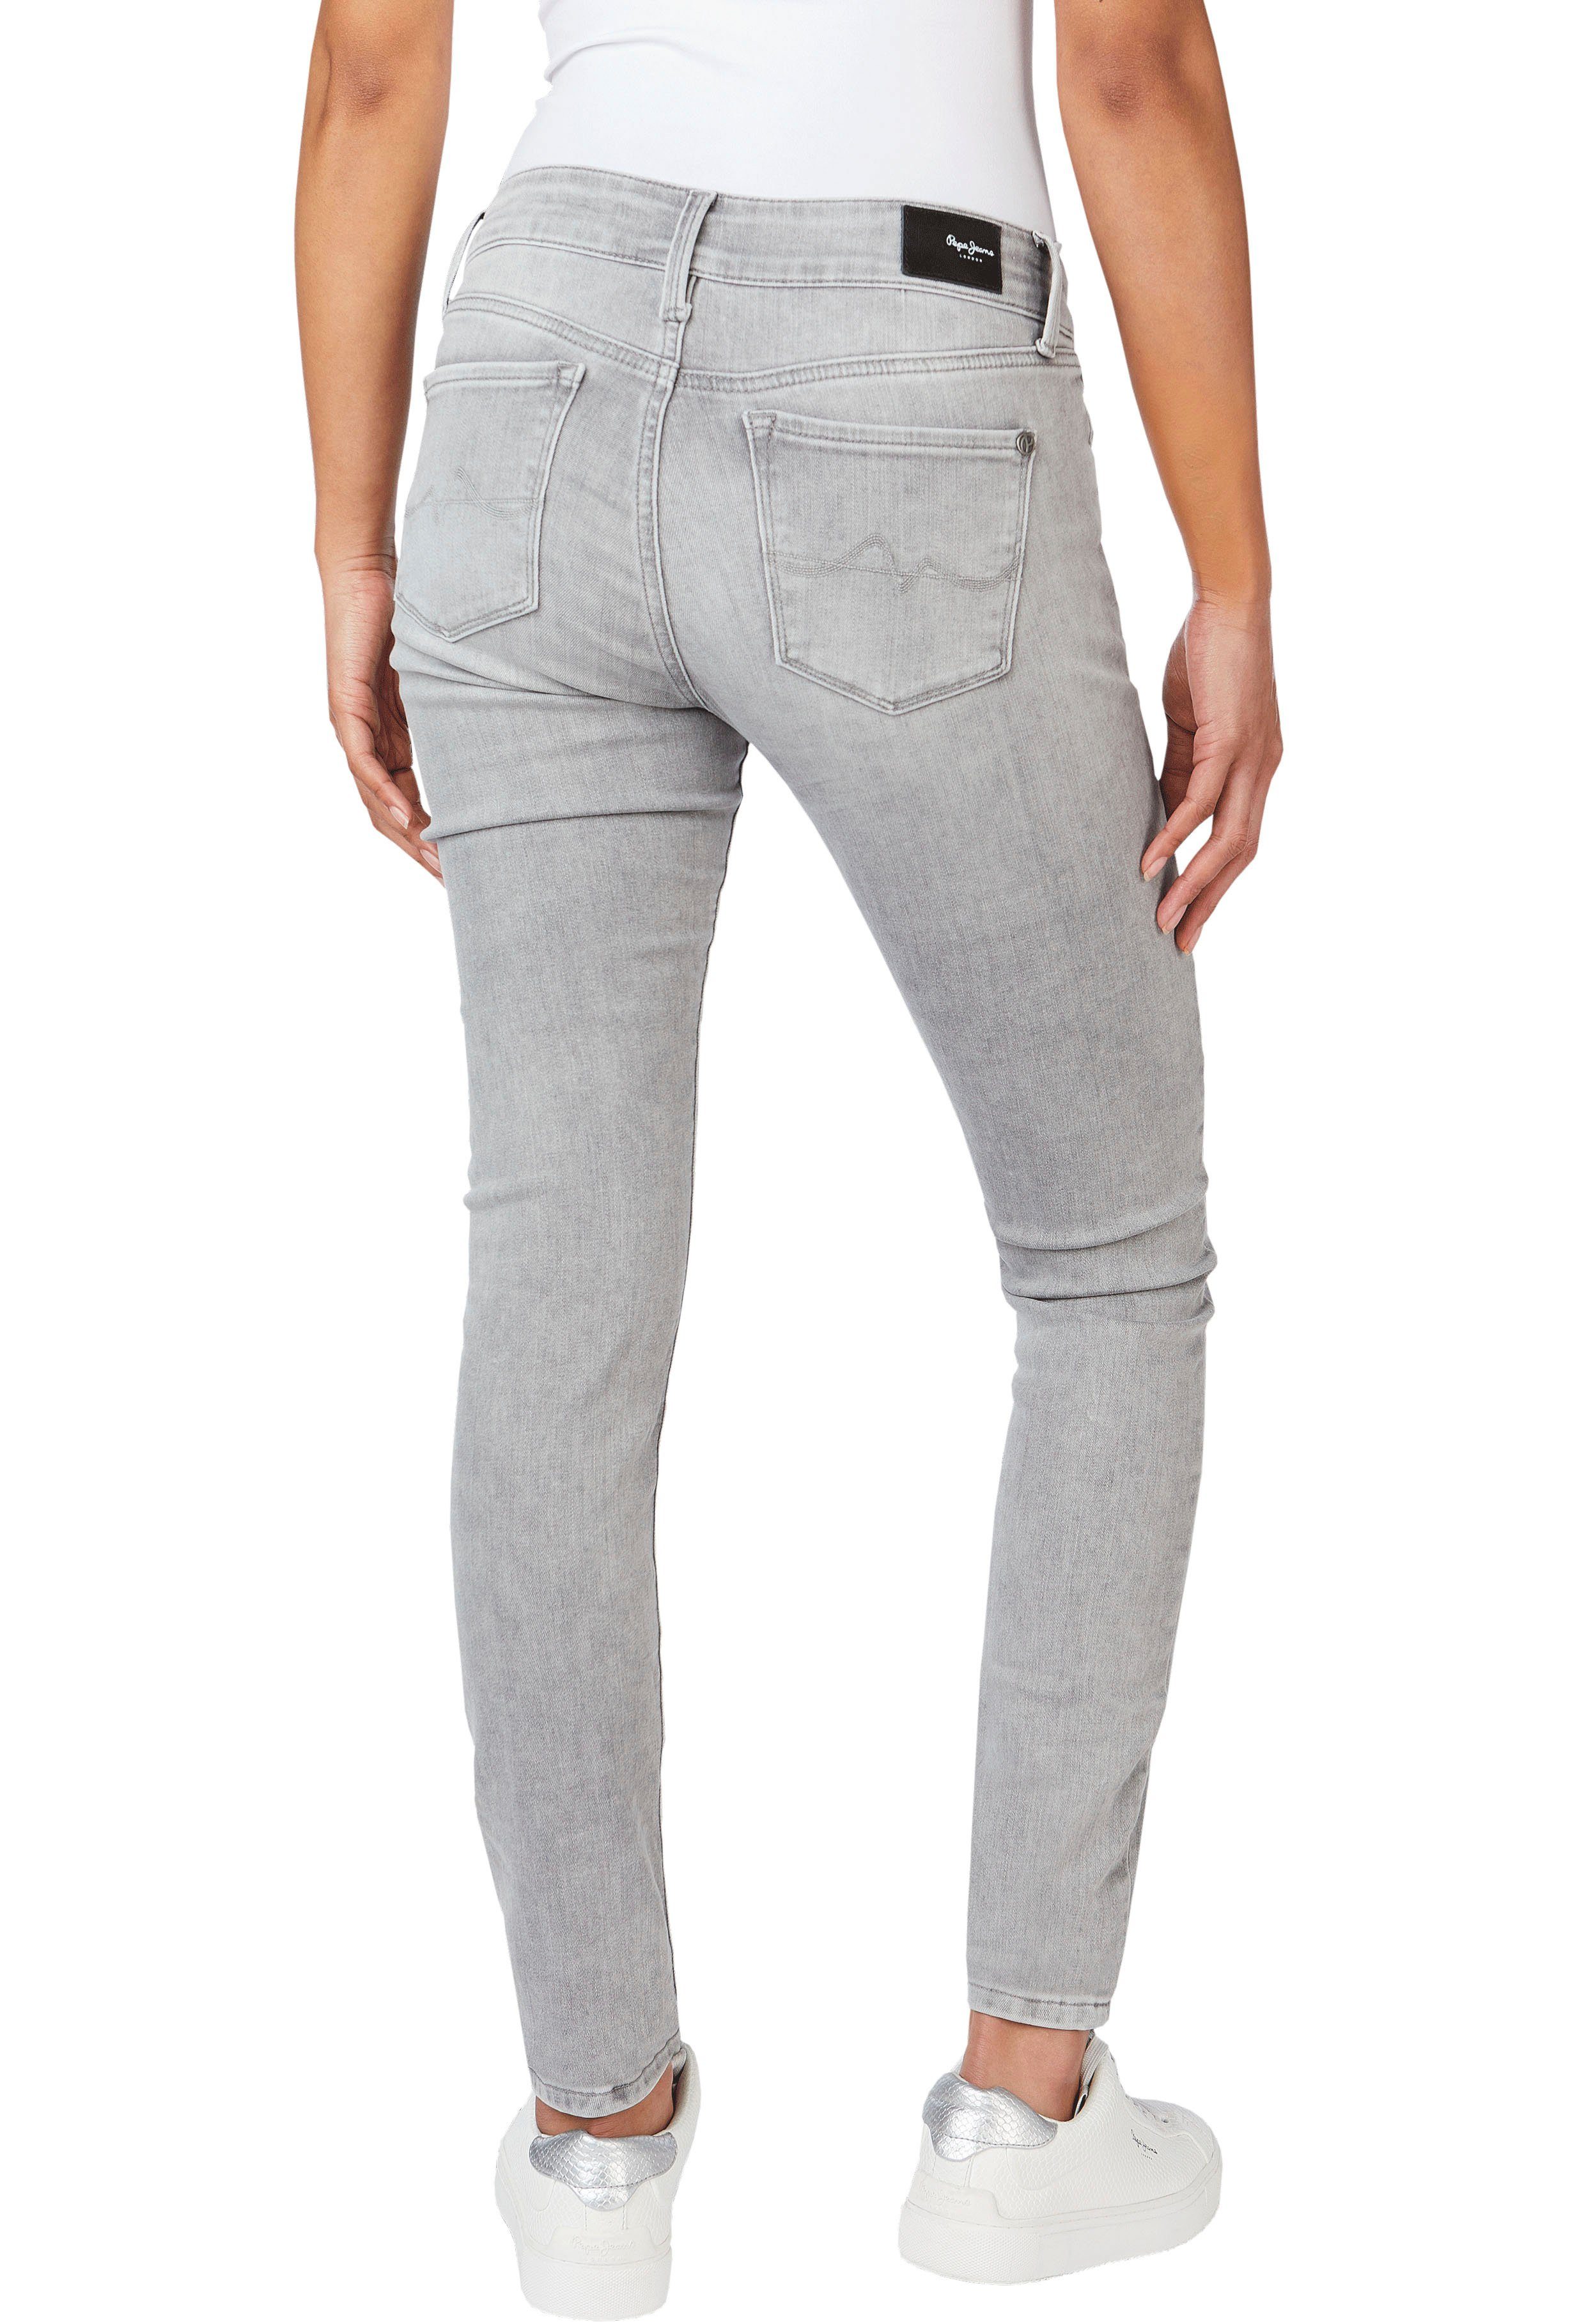 Pepe Jeans Skinny-fit-Jeans SOHO im 5-Pocket-Stil mit 1-Knopf Bund und  Stretch-Anteil, Cool kombinierbar mit Shirt und Sneakern für einen casual  Look